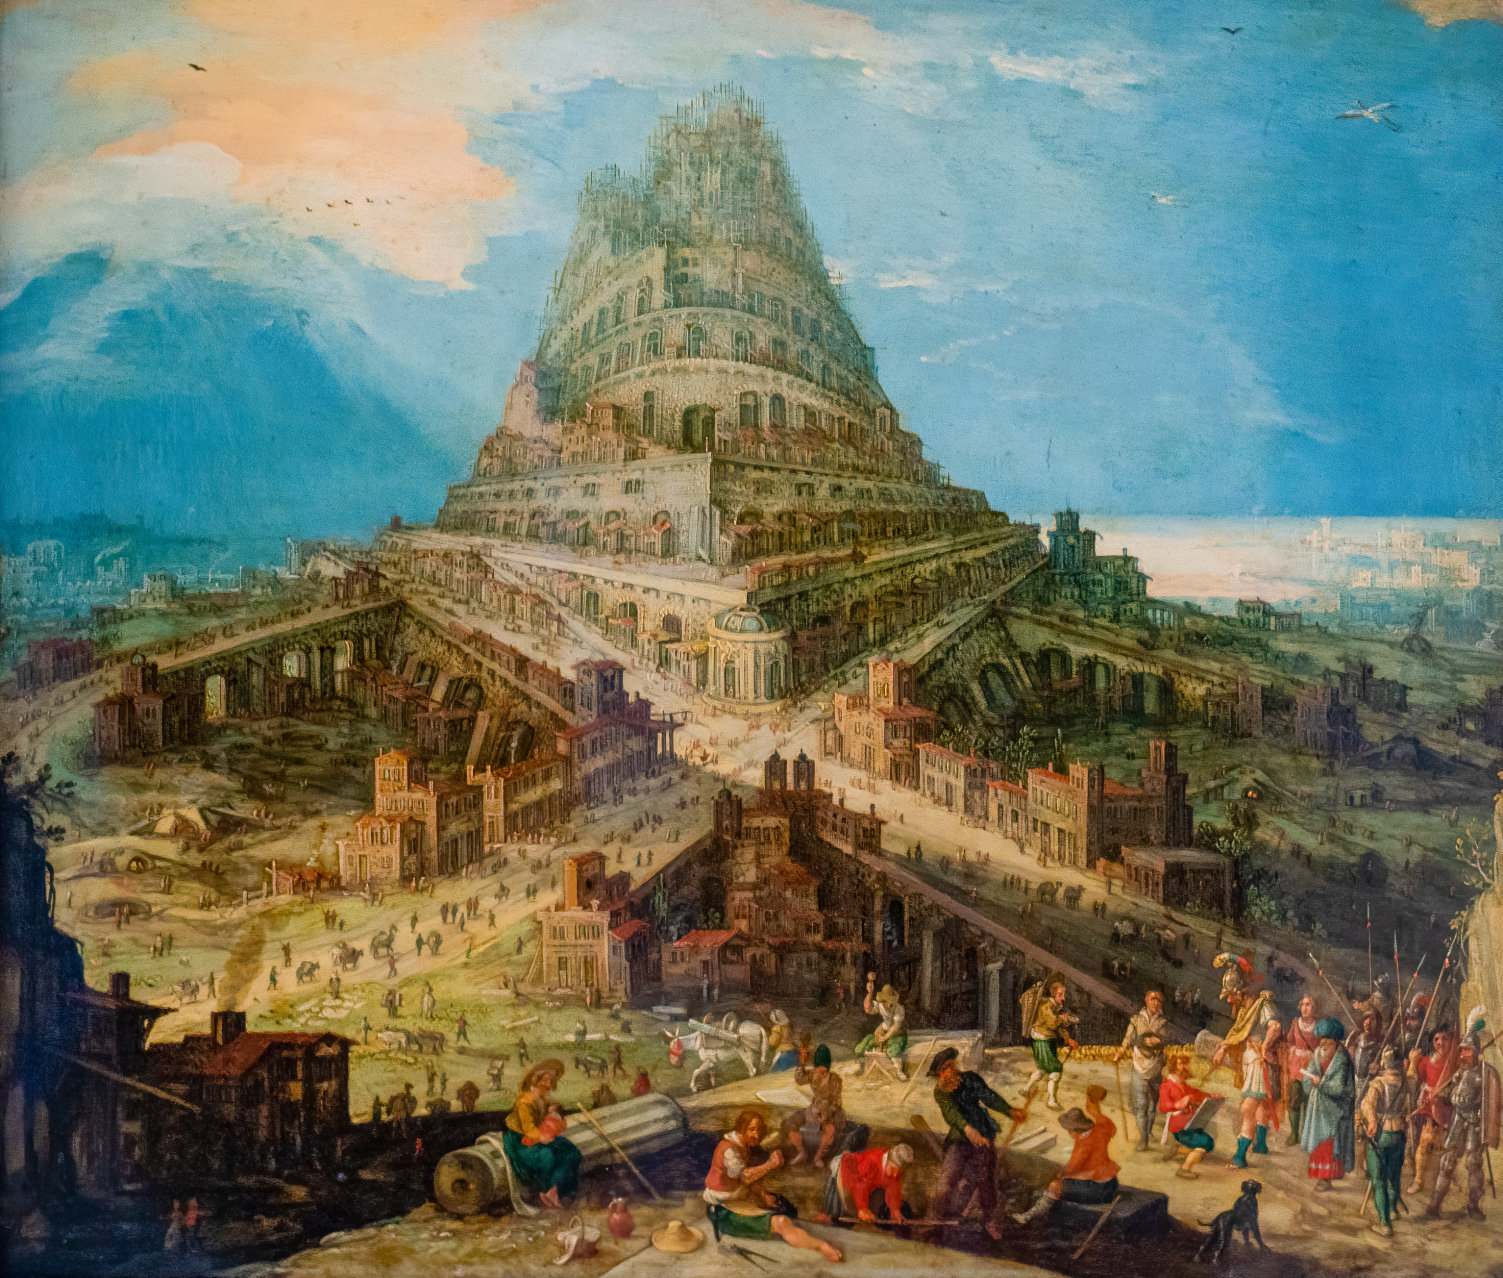 Bằng chứng đầu tiên về Tháp Babel trong Kinh thánh được phát hiện 1